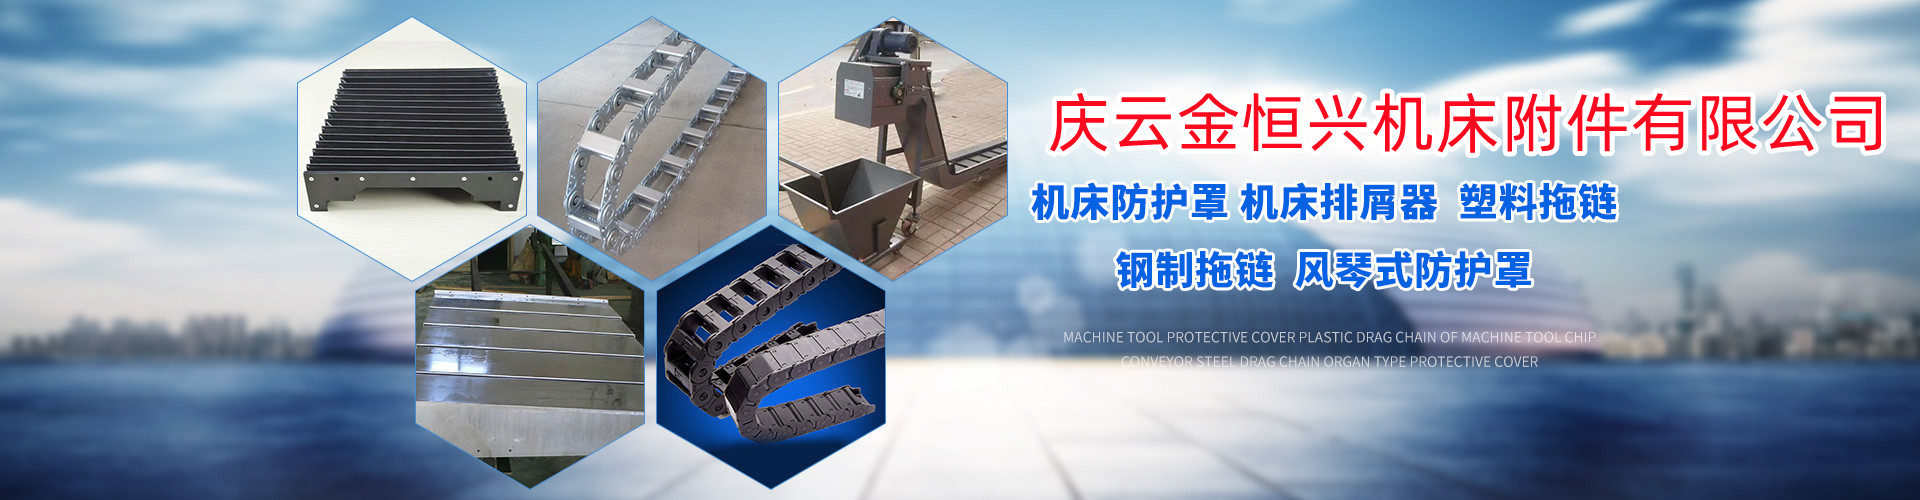 中国台湾亚威NSP-3016龙门加工中心机床防护罩厂家推荐